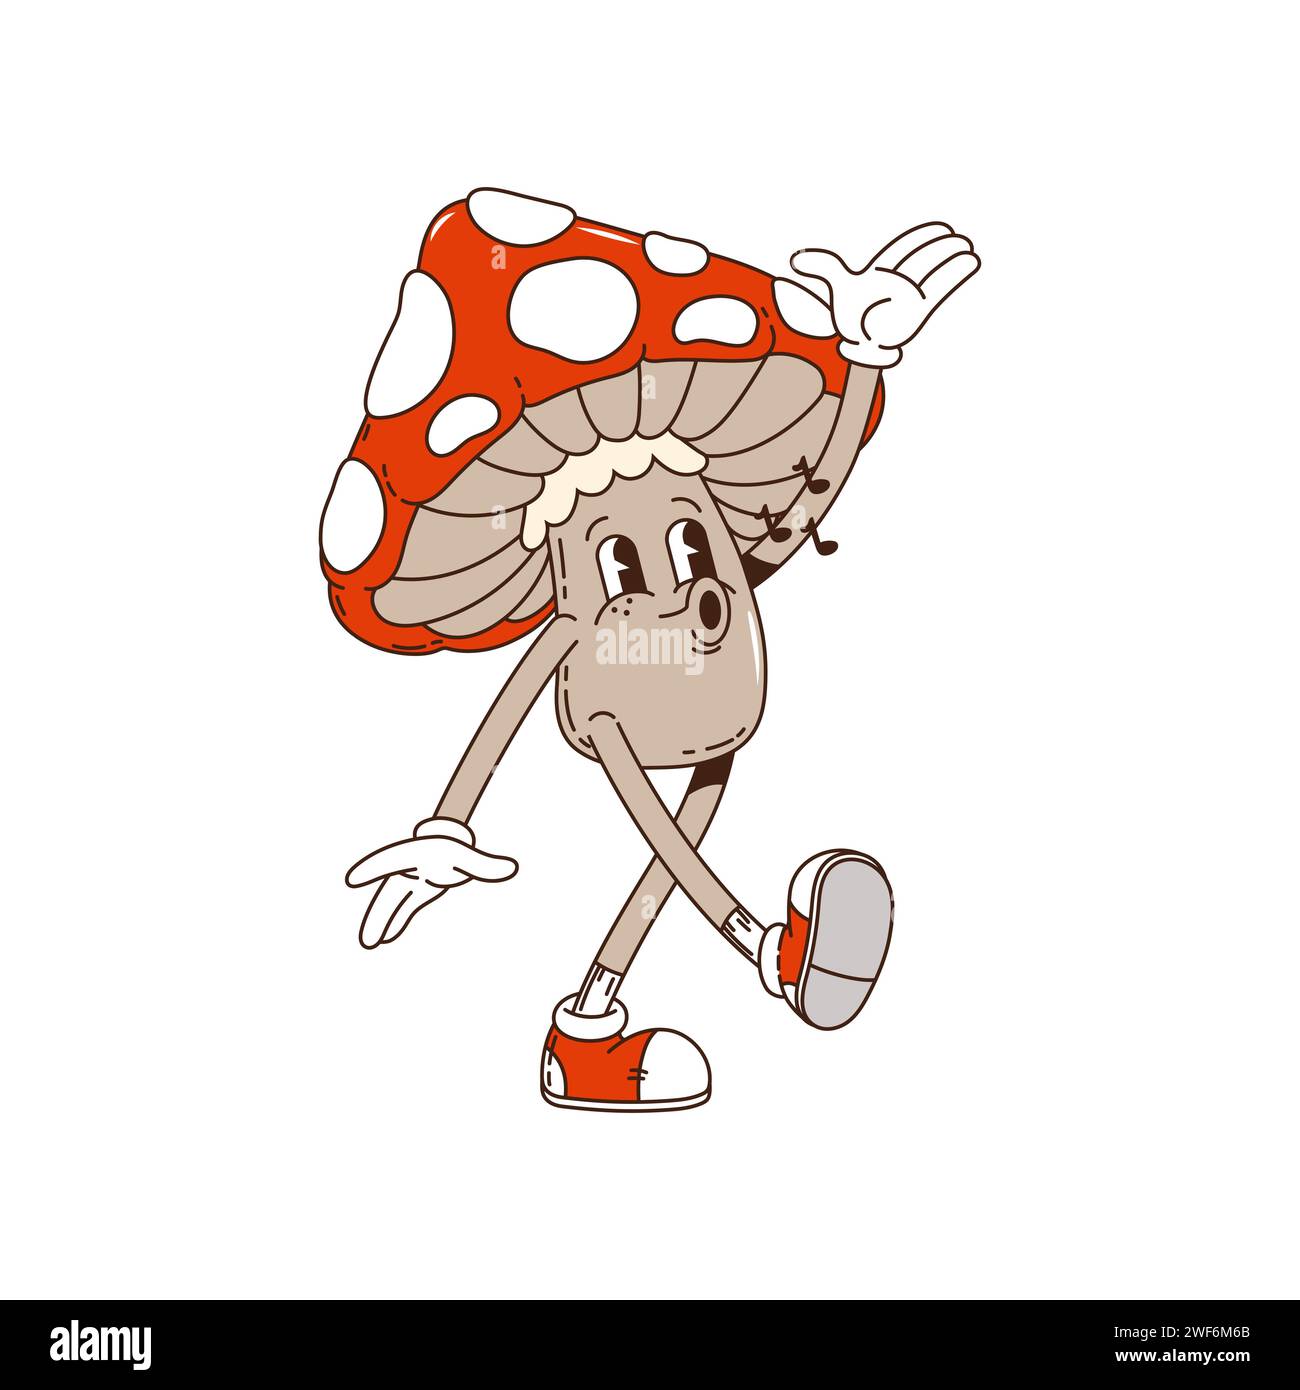 Groovy champignon dessin animé personnage sifflant chanson avec visage heureux, art rétro vectoriel Champignon groovy hippie chantant mélodie avec notes de chanson, dessin animé funky ou original Kawaii hippie amanita champignon Illustration de Vecteur